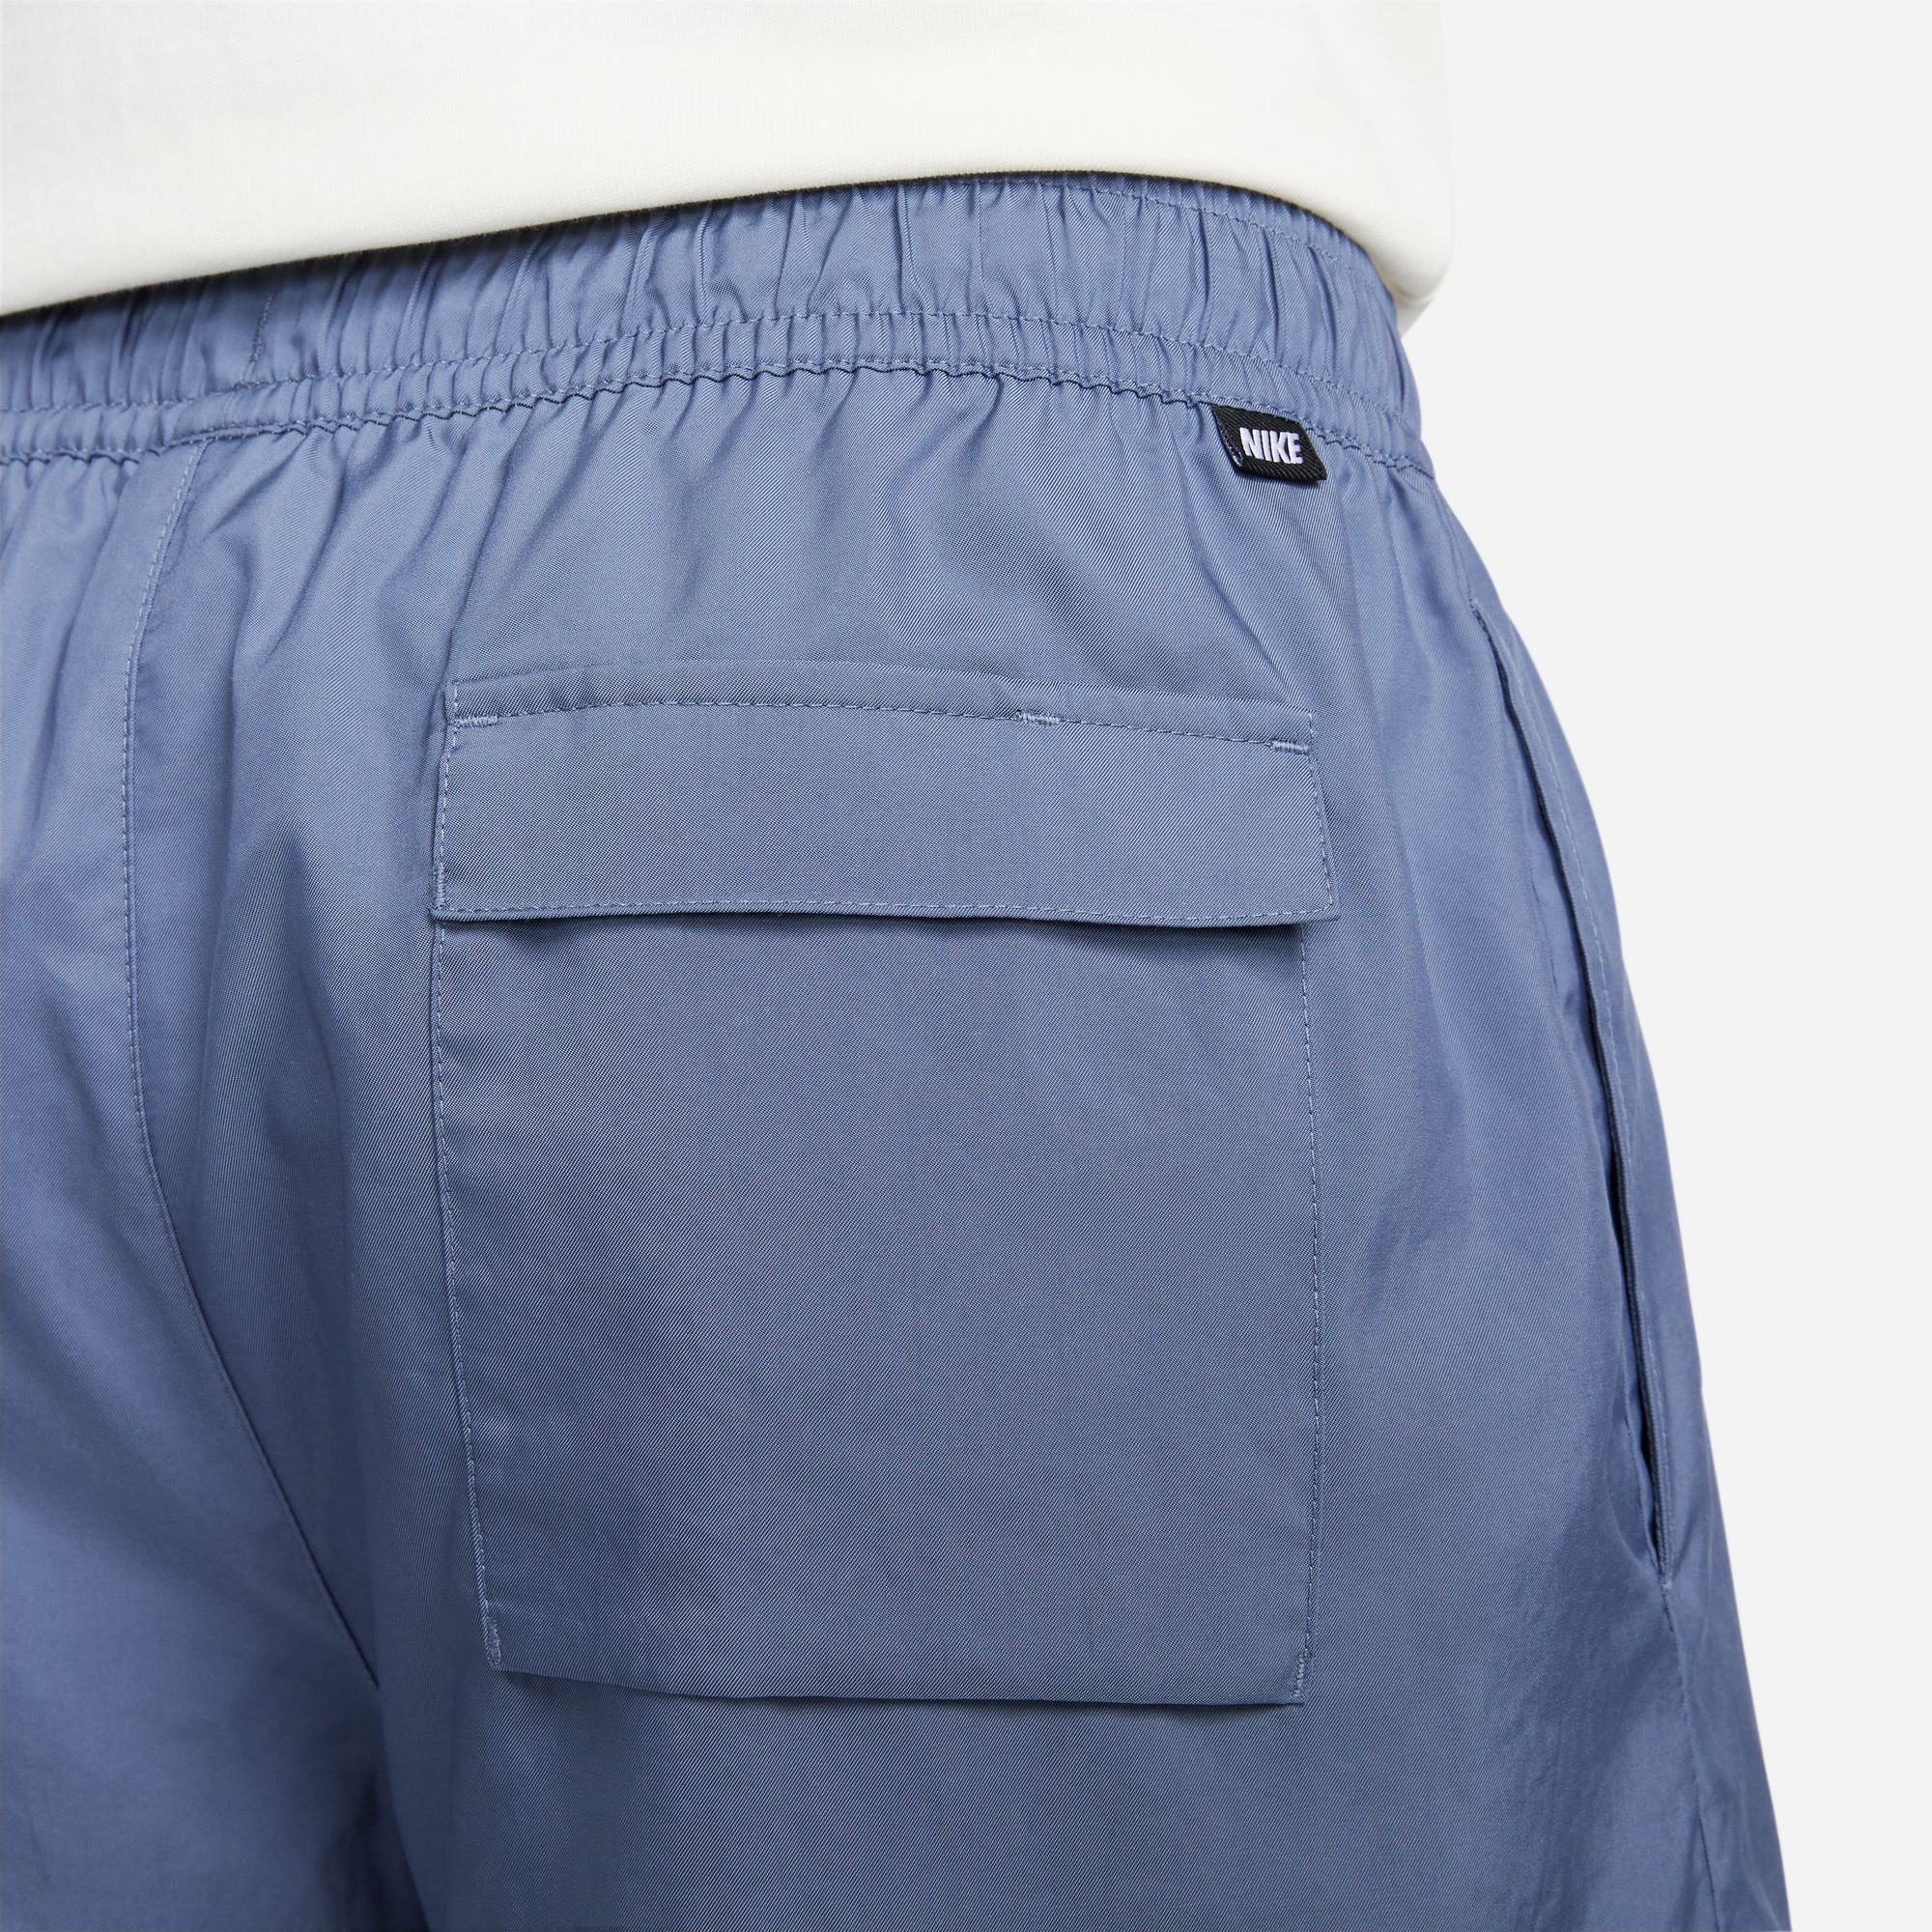 Lined Nike Shorts Shorts Men's Sportswear Essentials blau Woven Flow Sport